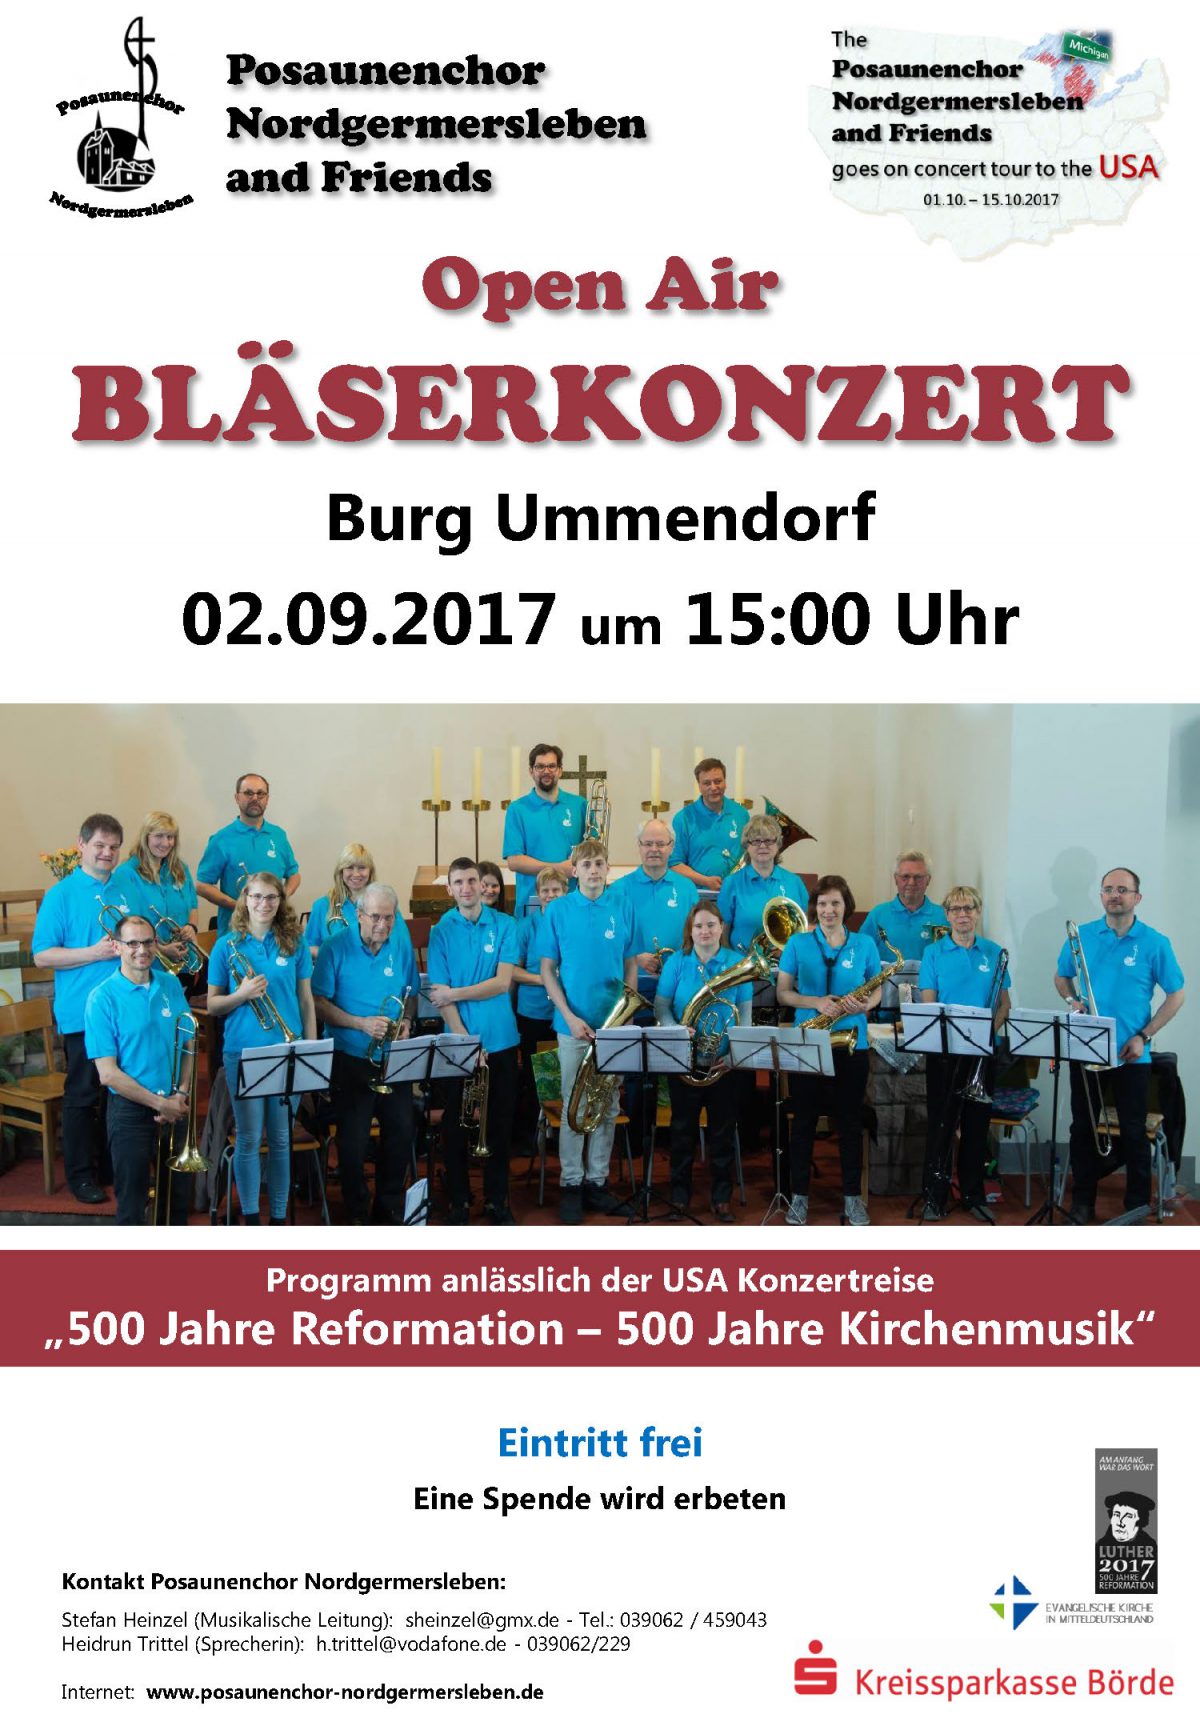 Open Air Konzert am 02.09.17, 15:00 Uhr  auf der Burg Ummendorf